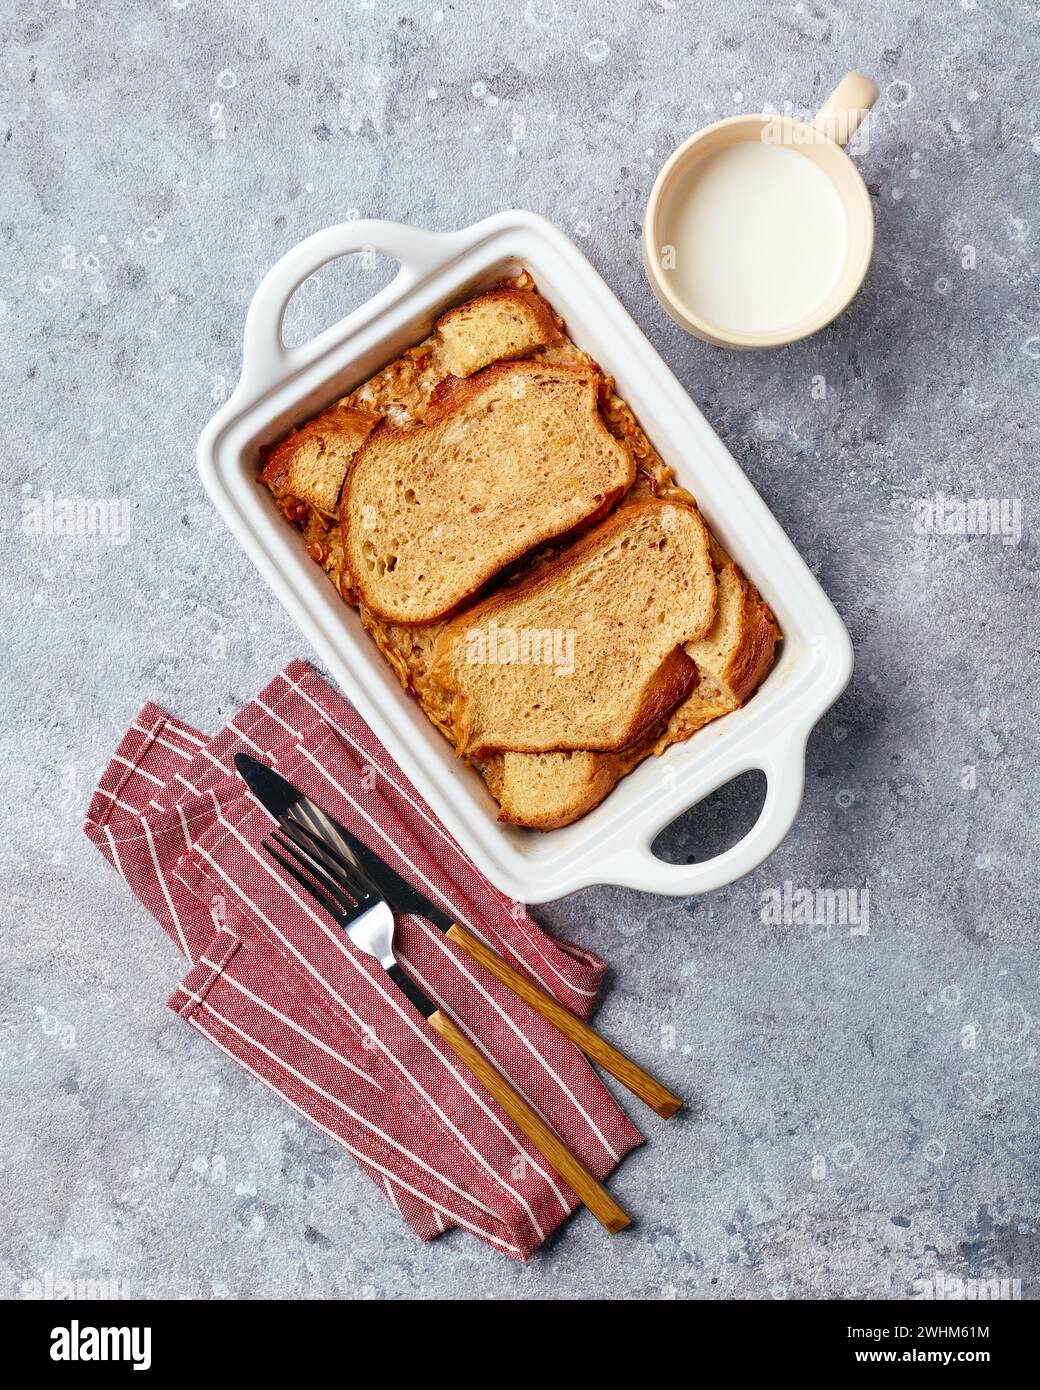 Pane budino casseruola per la colazione a base di pane di grano, uova, latte e mele grattugiate Foto Stock